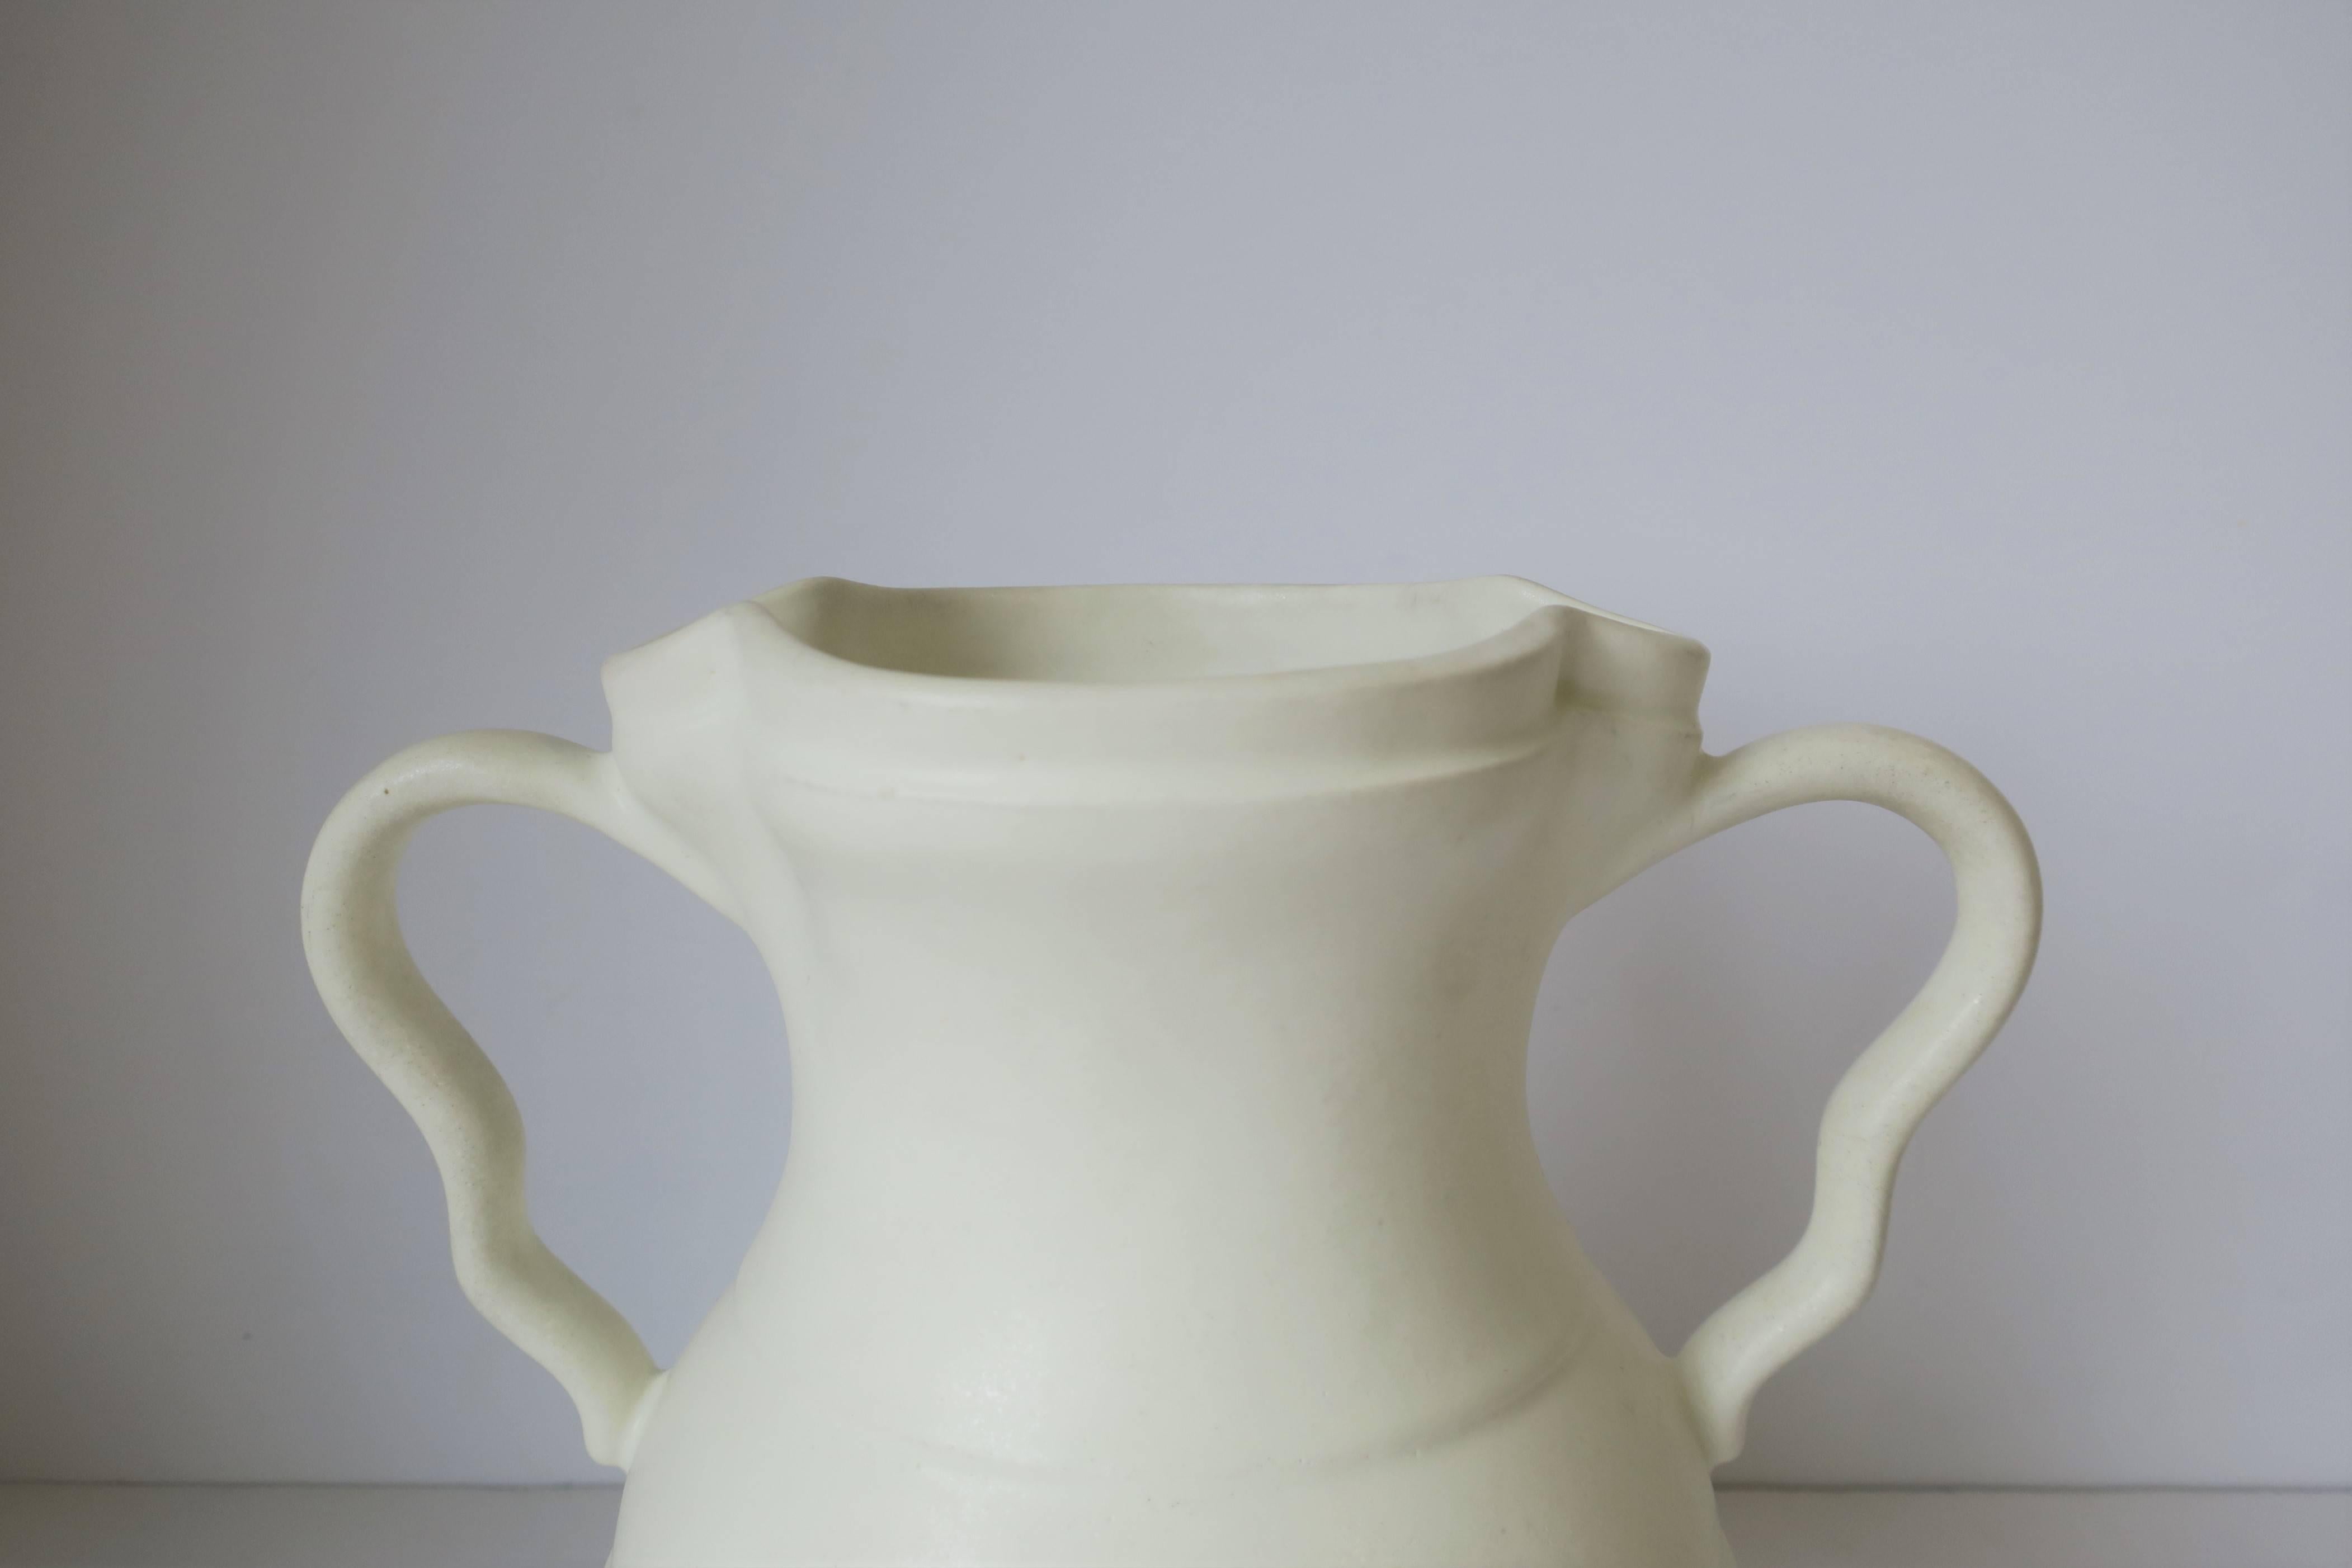 European White Urn Form Ceramic Pottery Vase 3